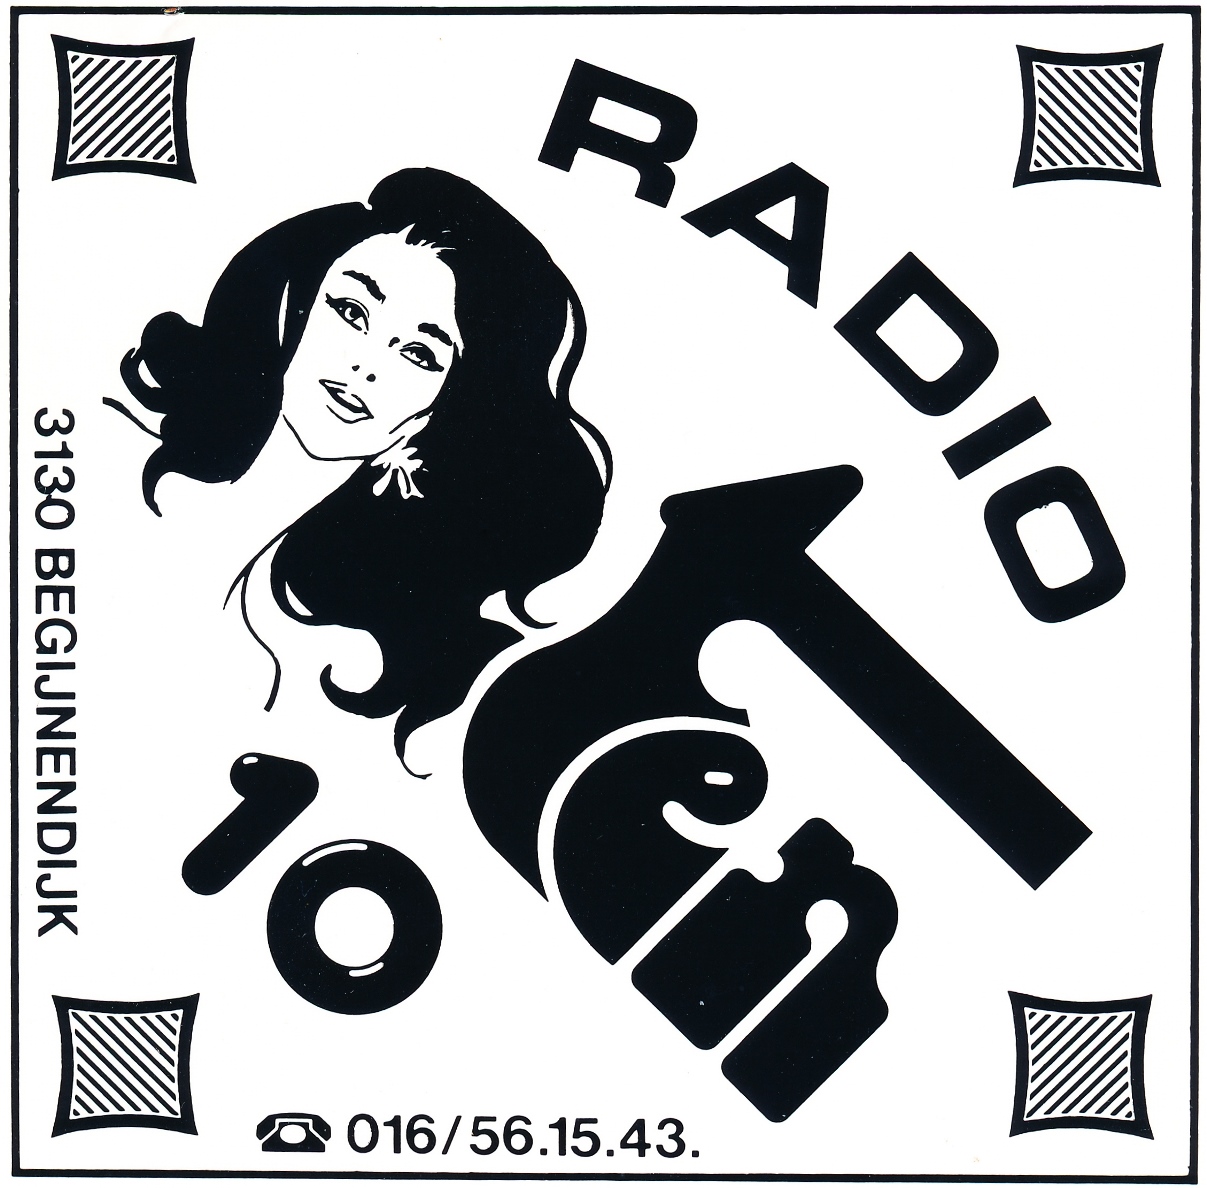 Radio Ten